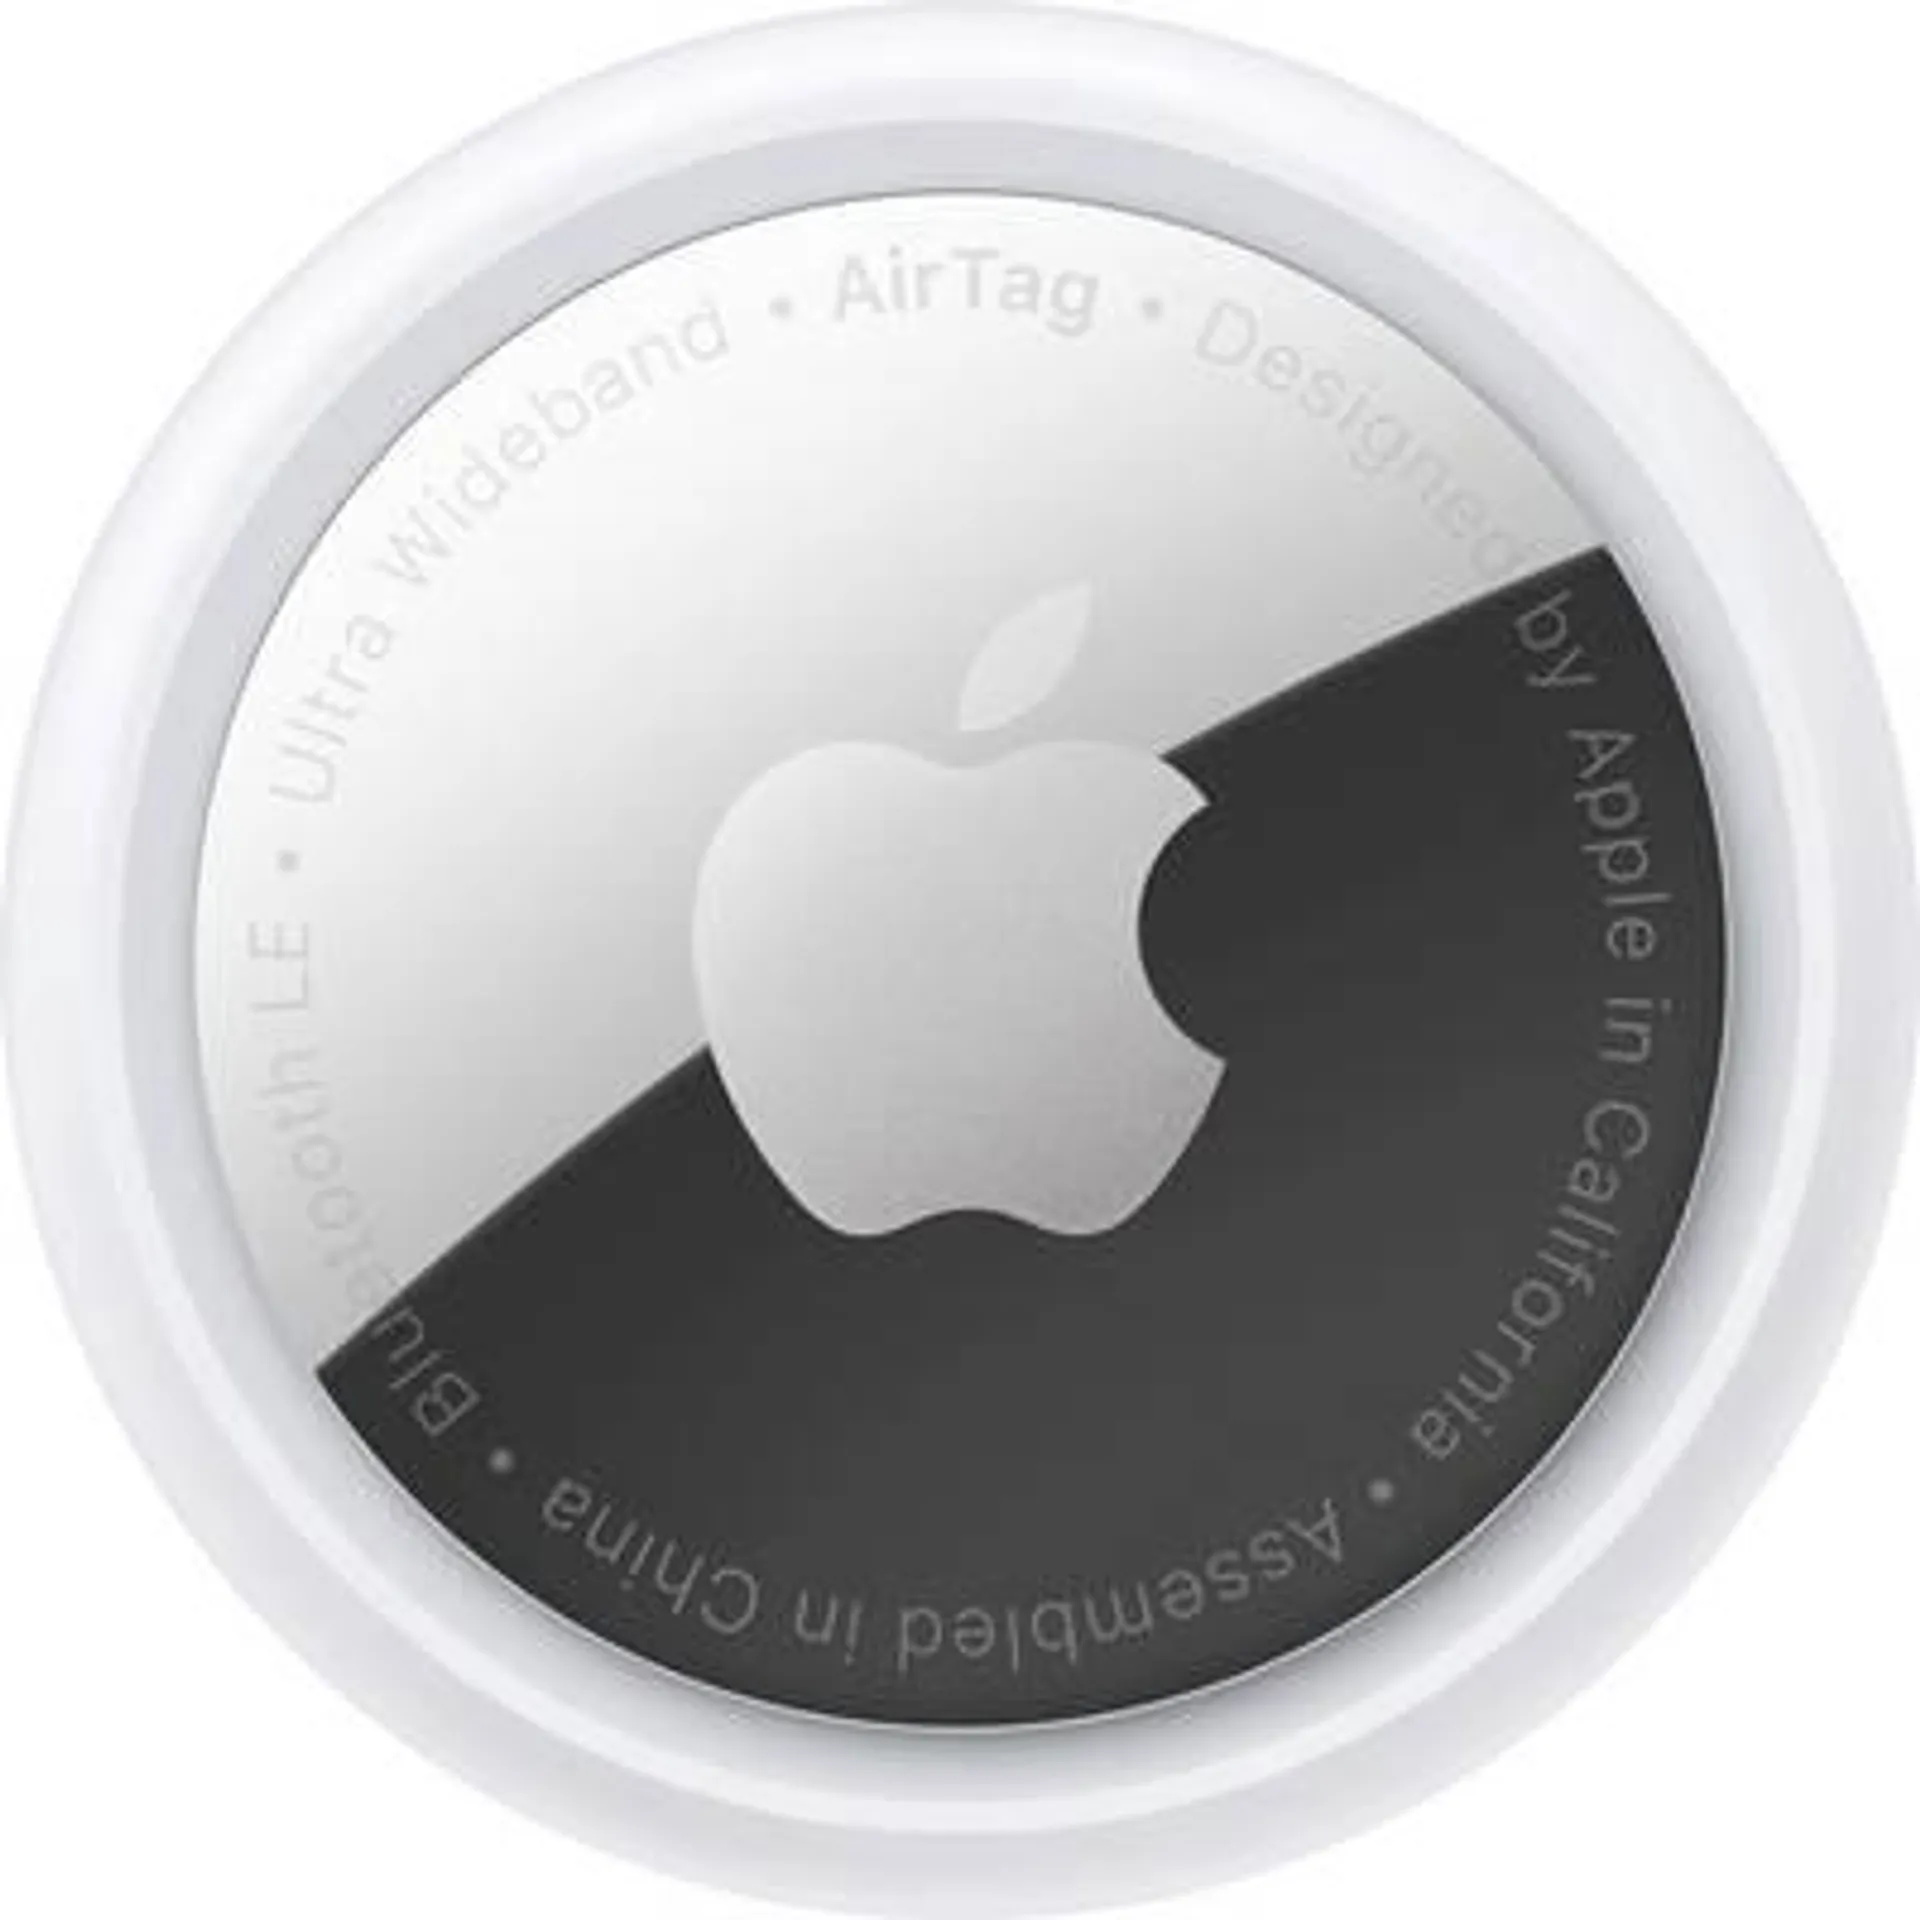 Apple AirTag AirTag White-silver